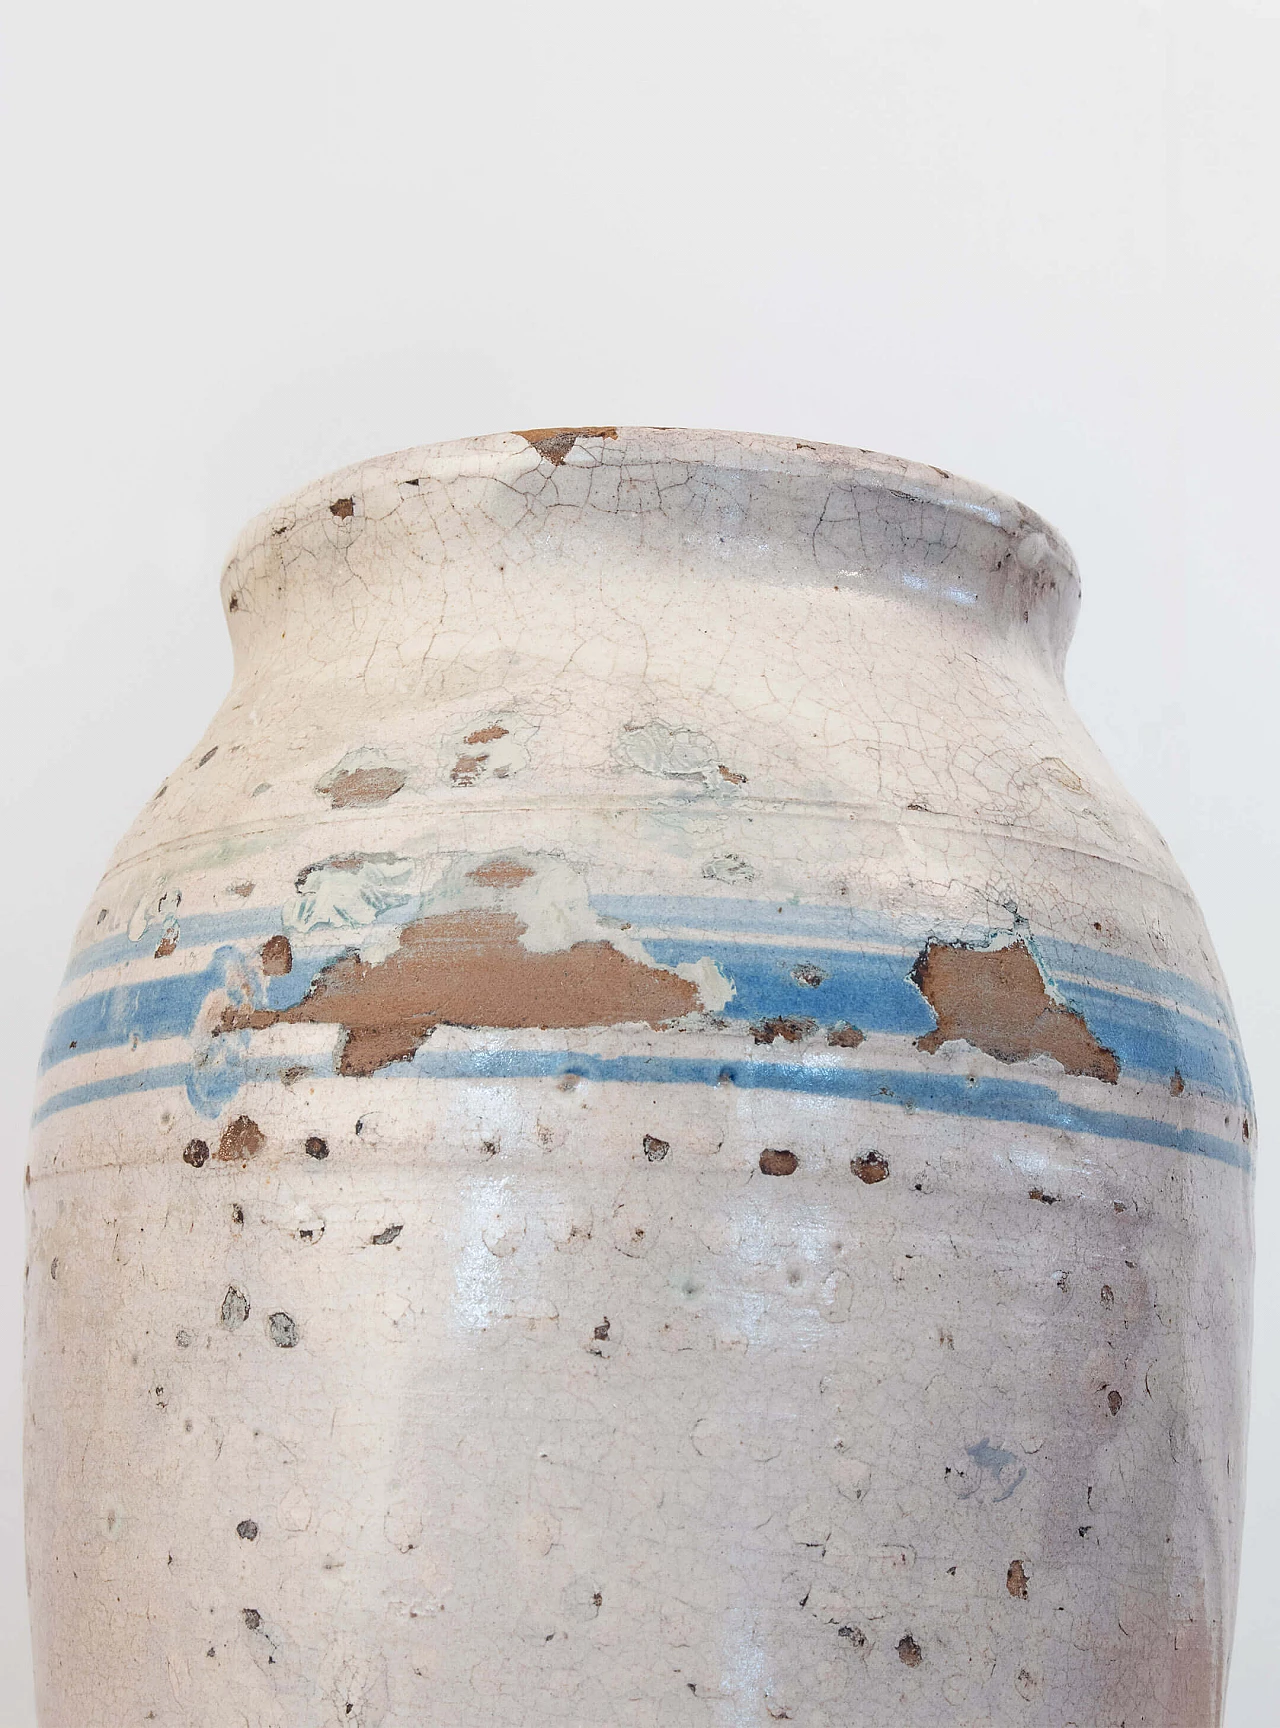 Terracotta vase of Grottaglie 1084695